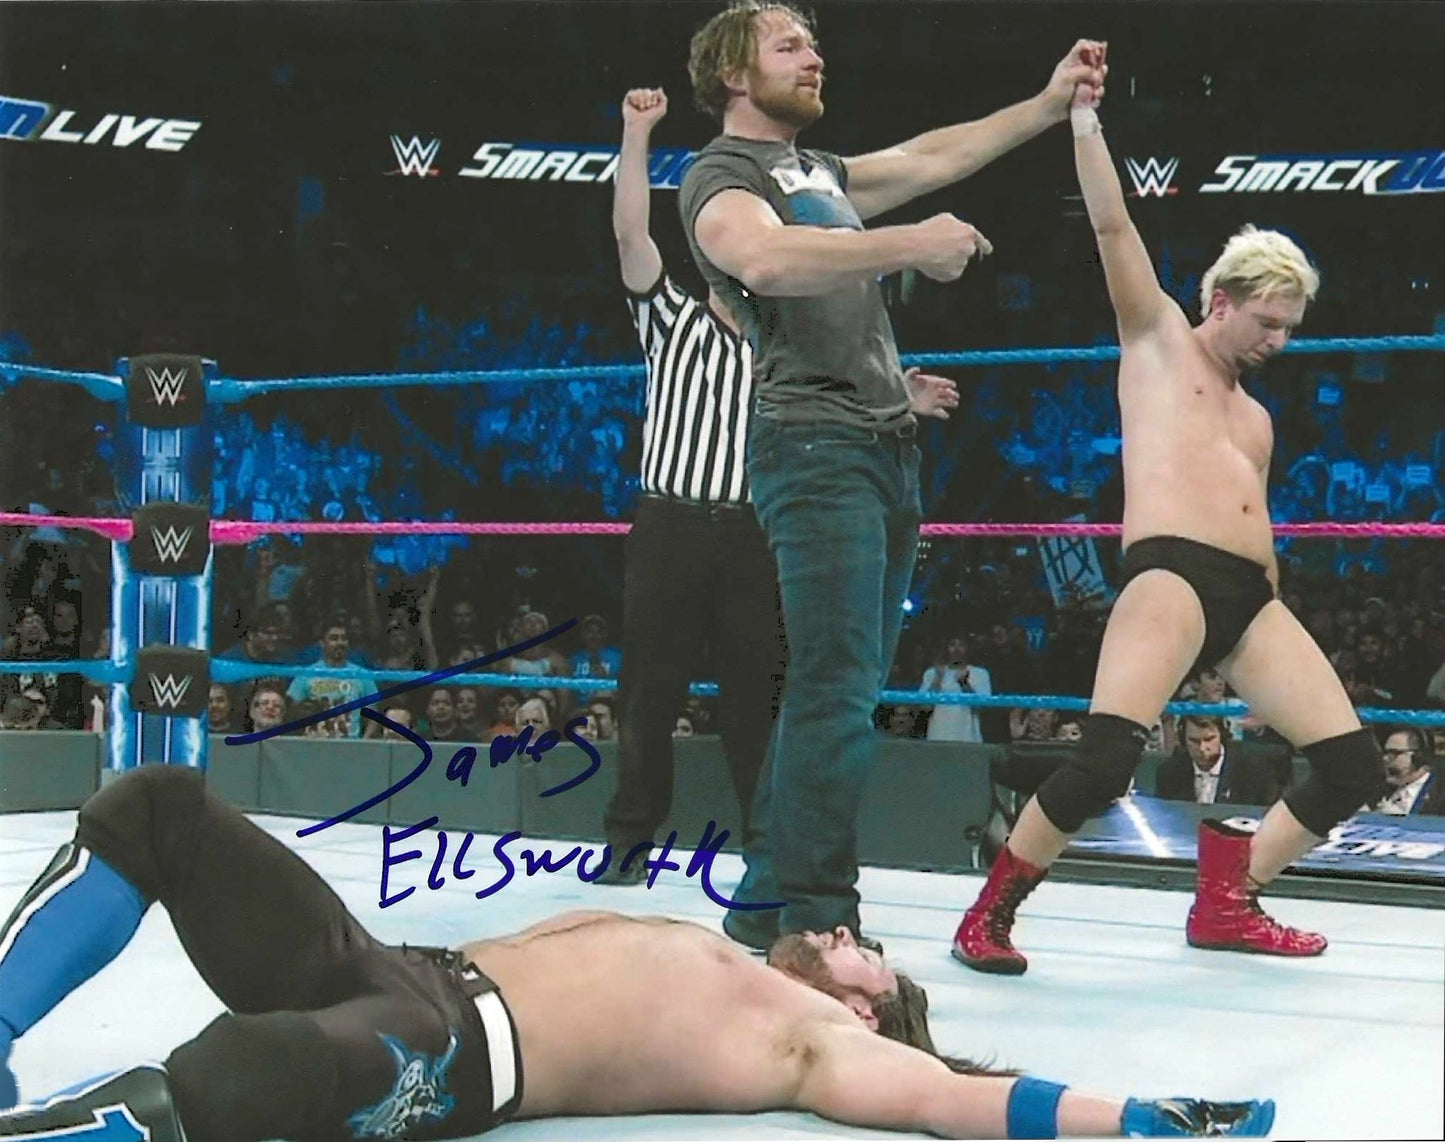 James Ellsworth Autographed Signed "WWE" 8X10 Photo Elite Promotions & Graphz Authentication